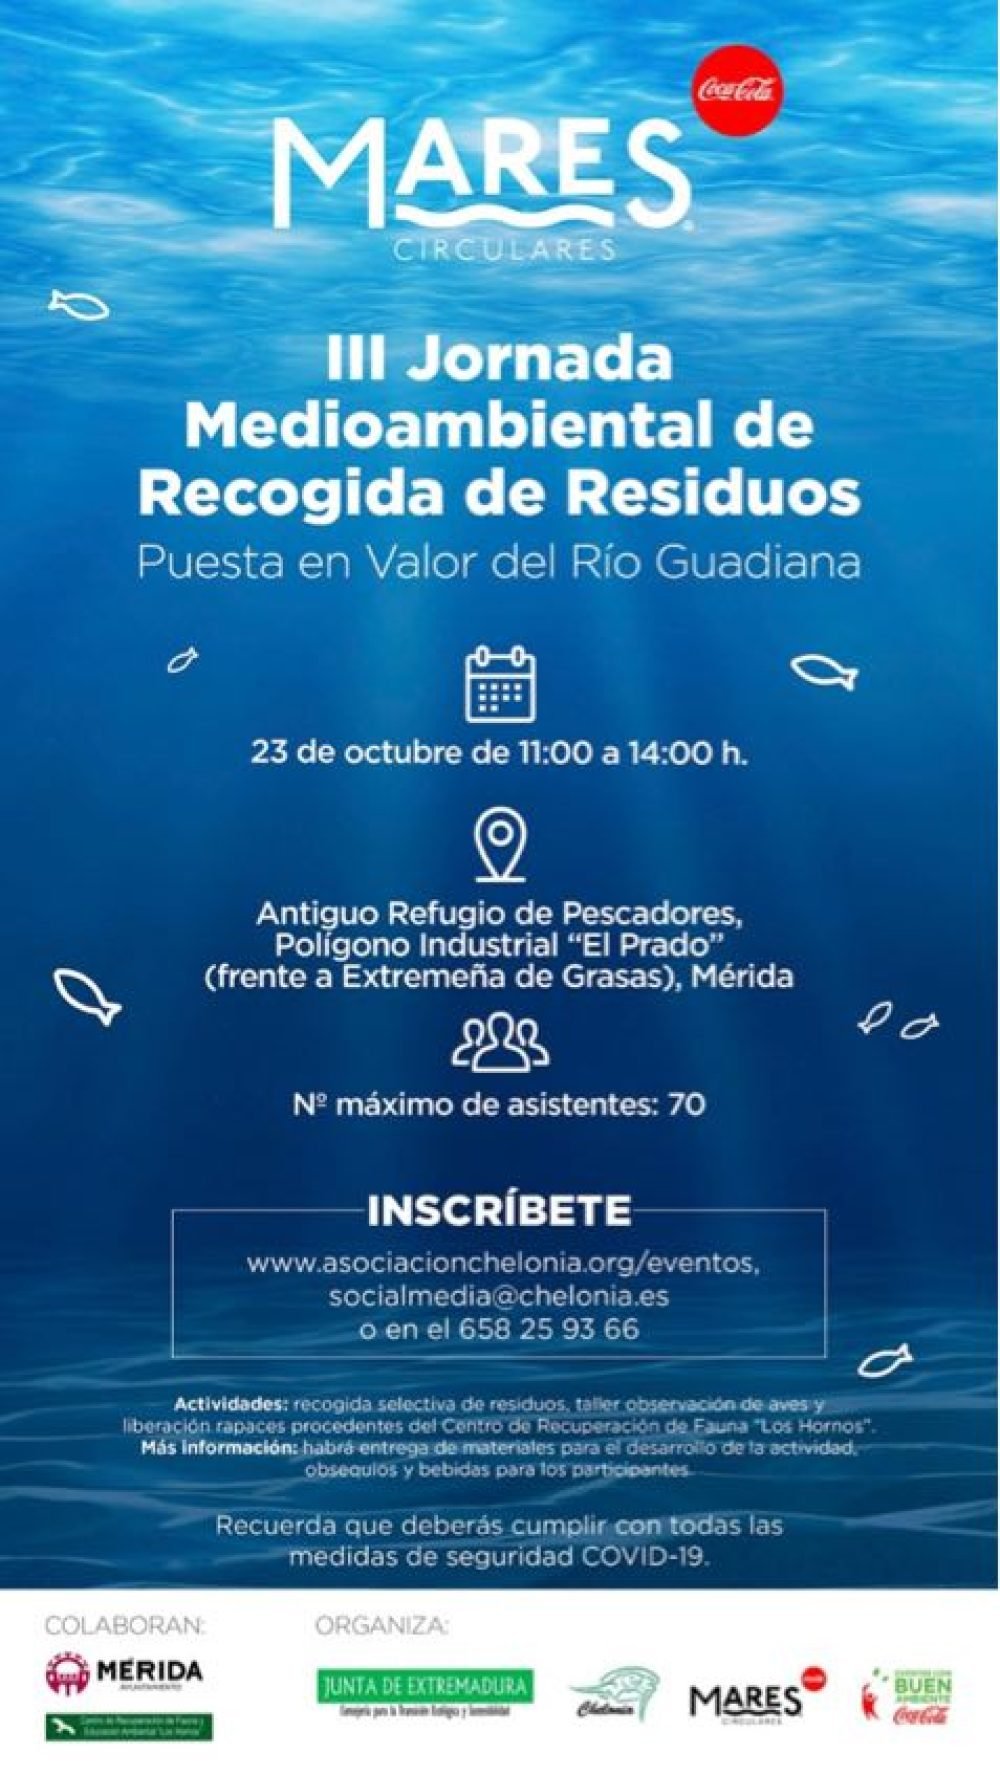 IV Jornada Medioambiental de Recogida de Residuos y Puesta en Valor del Río Guadiana